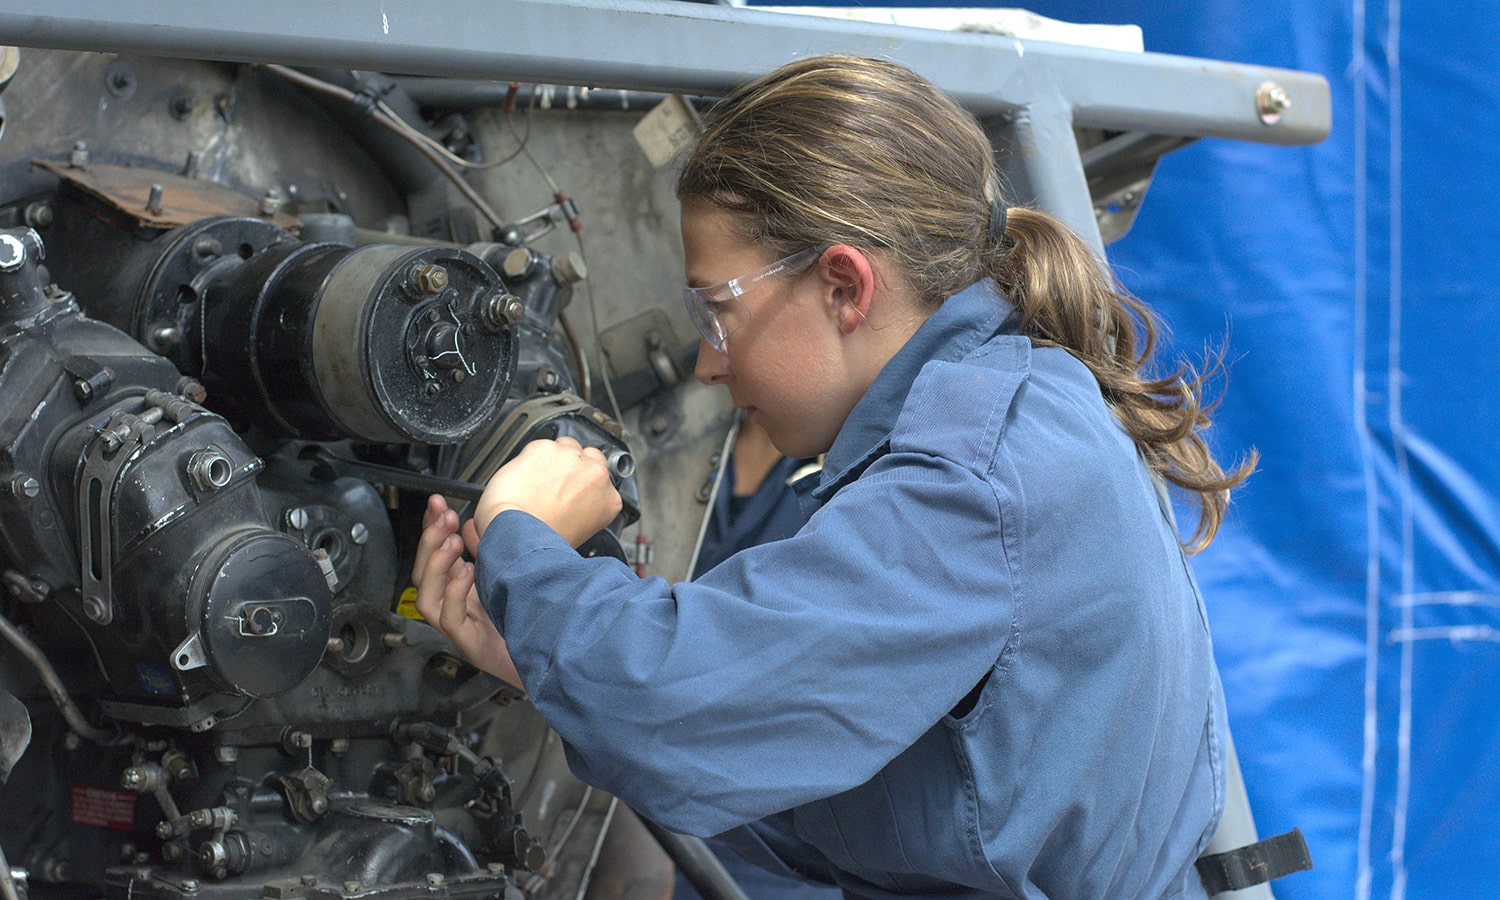 A cadet fixing an aircraft engine